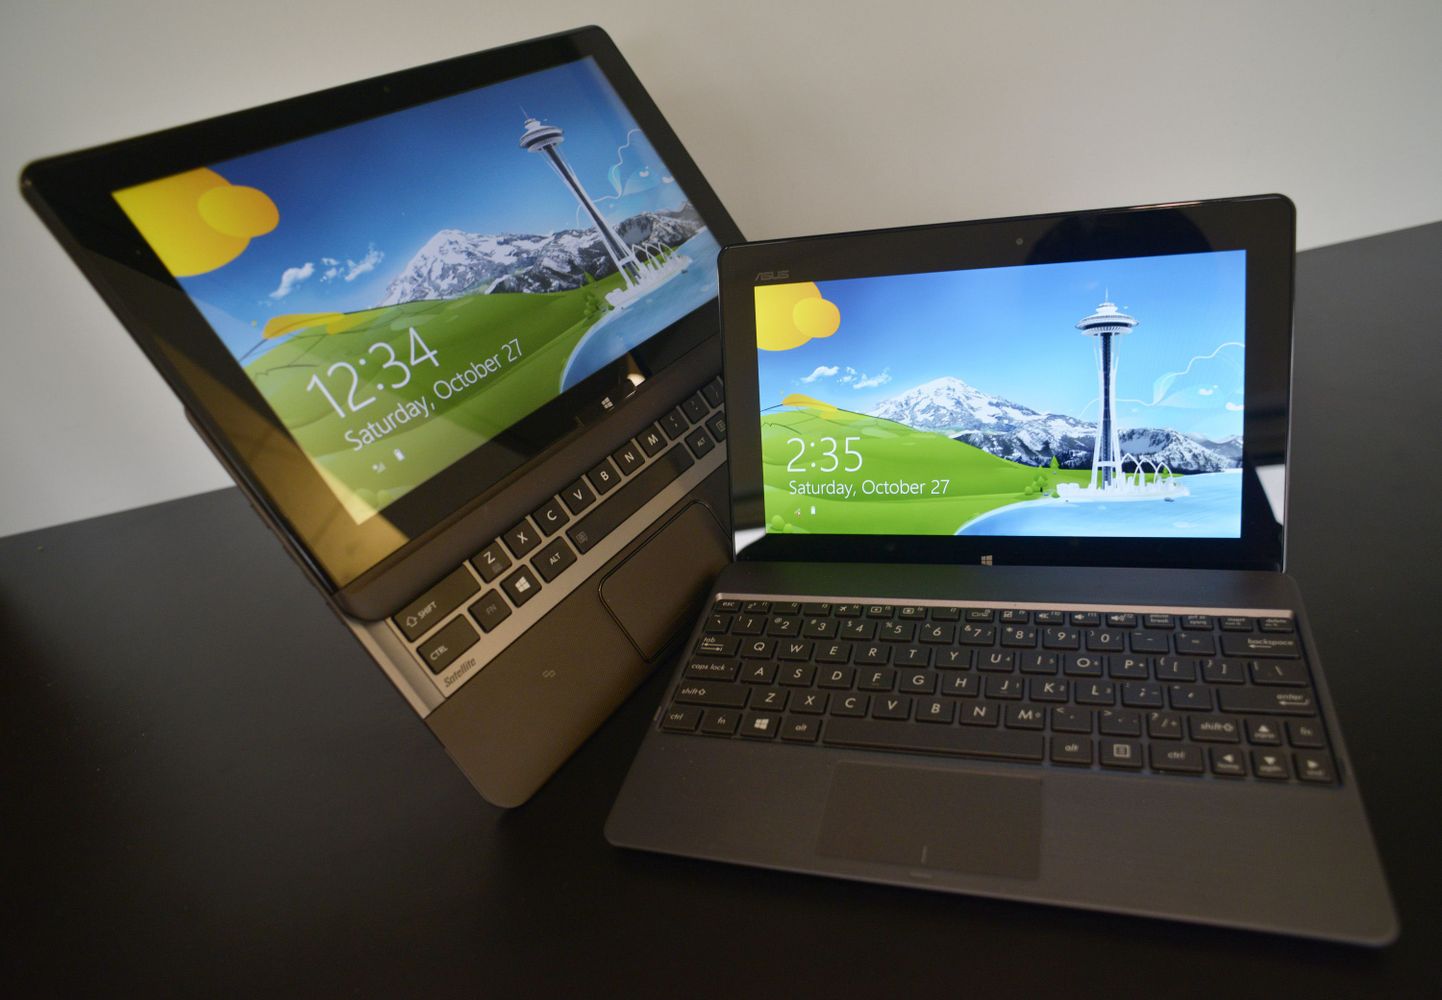 Toshiba U925t ja Asus Vivo Tab RT tahvelarvuti, mis on ühendatud sülearvutiga.